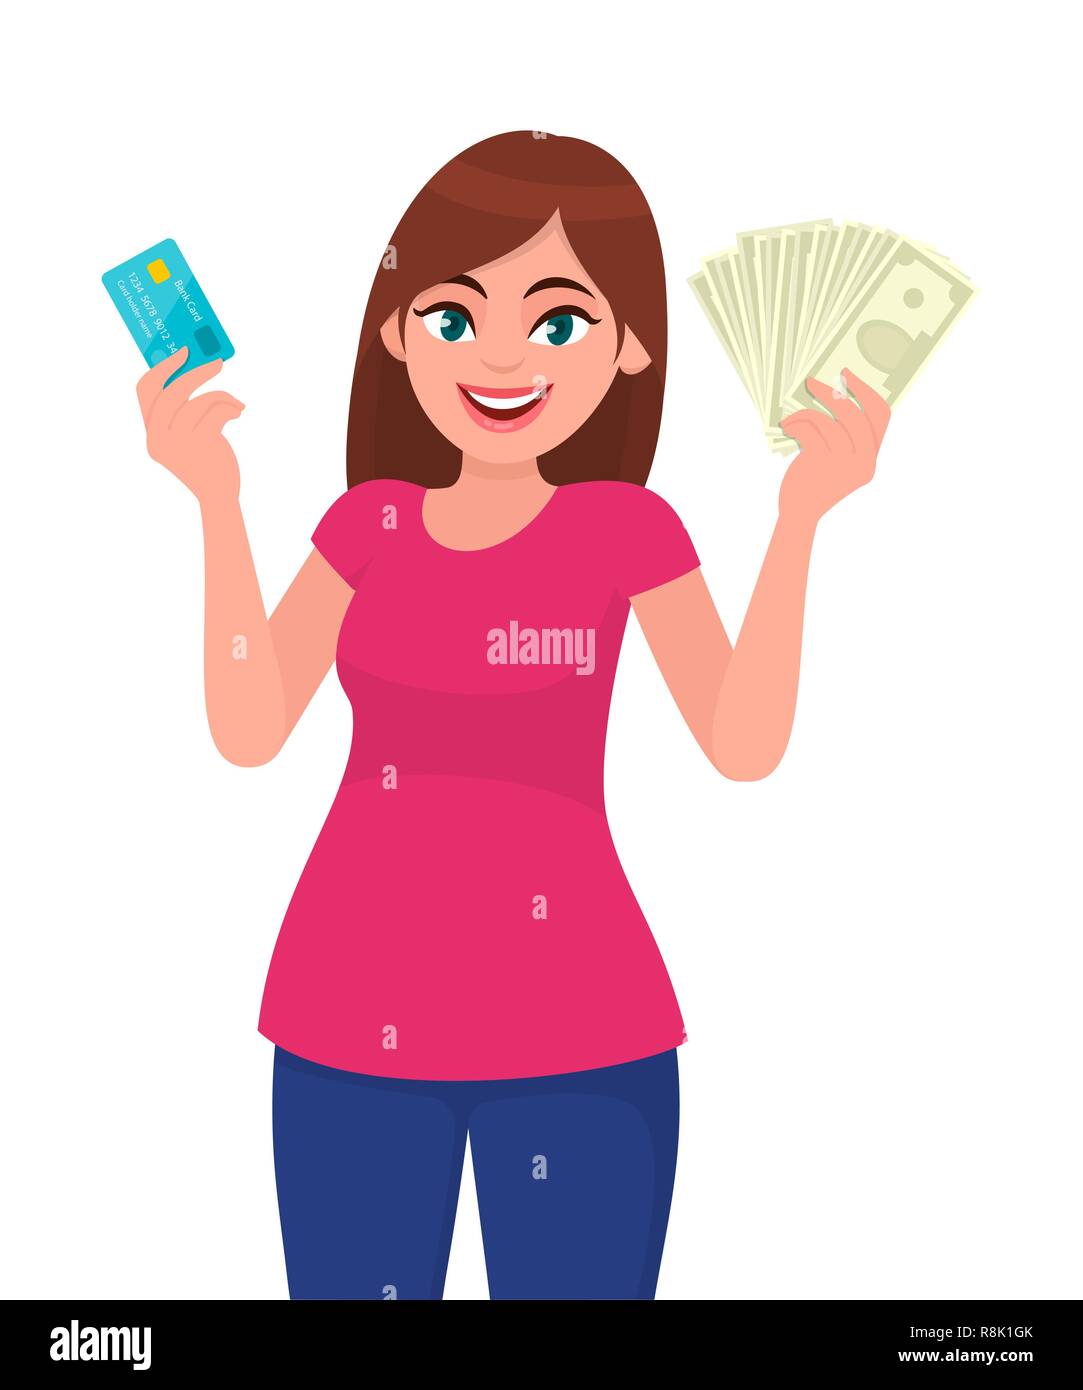 Attraktive junge Frau mit oder mit einem Kredit-/EC-Karte und Bargeld/Geld/Währung fest in der Hand. Wireless moderne Bank Zahlung. Business, Zahlung a Stock Vektor